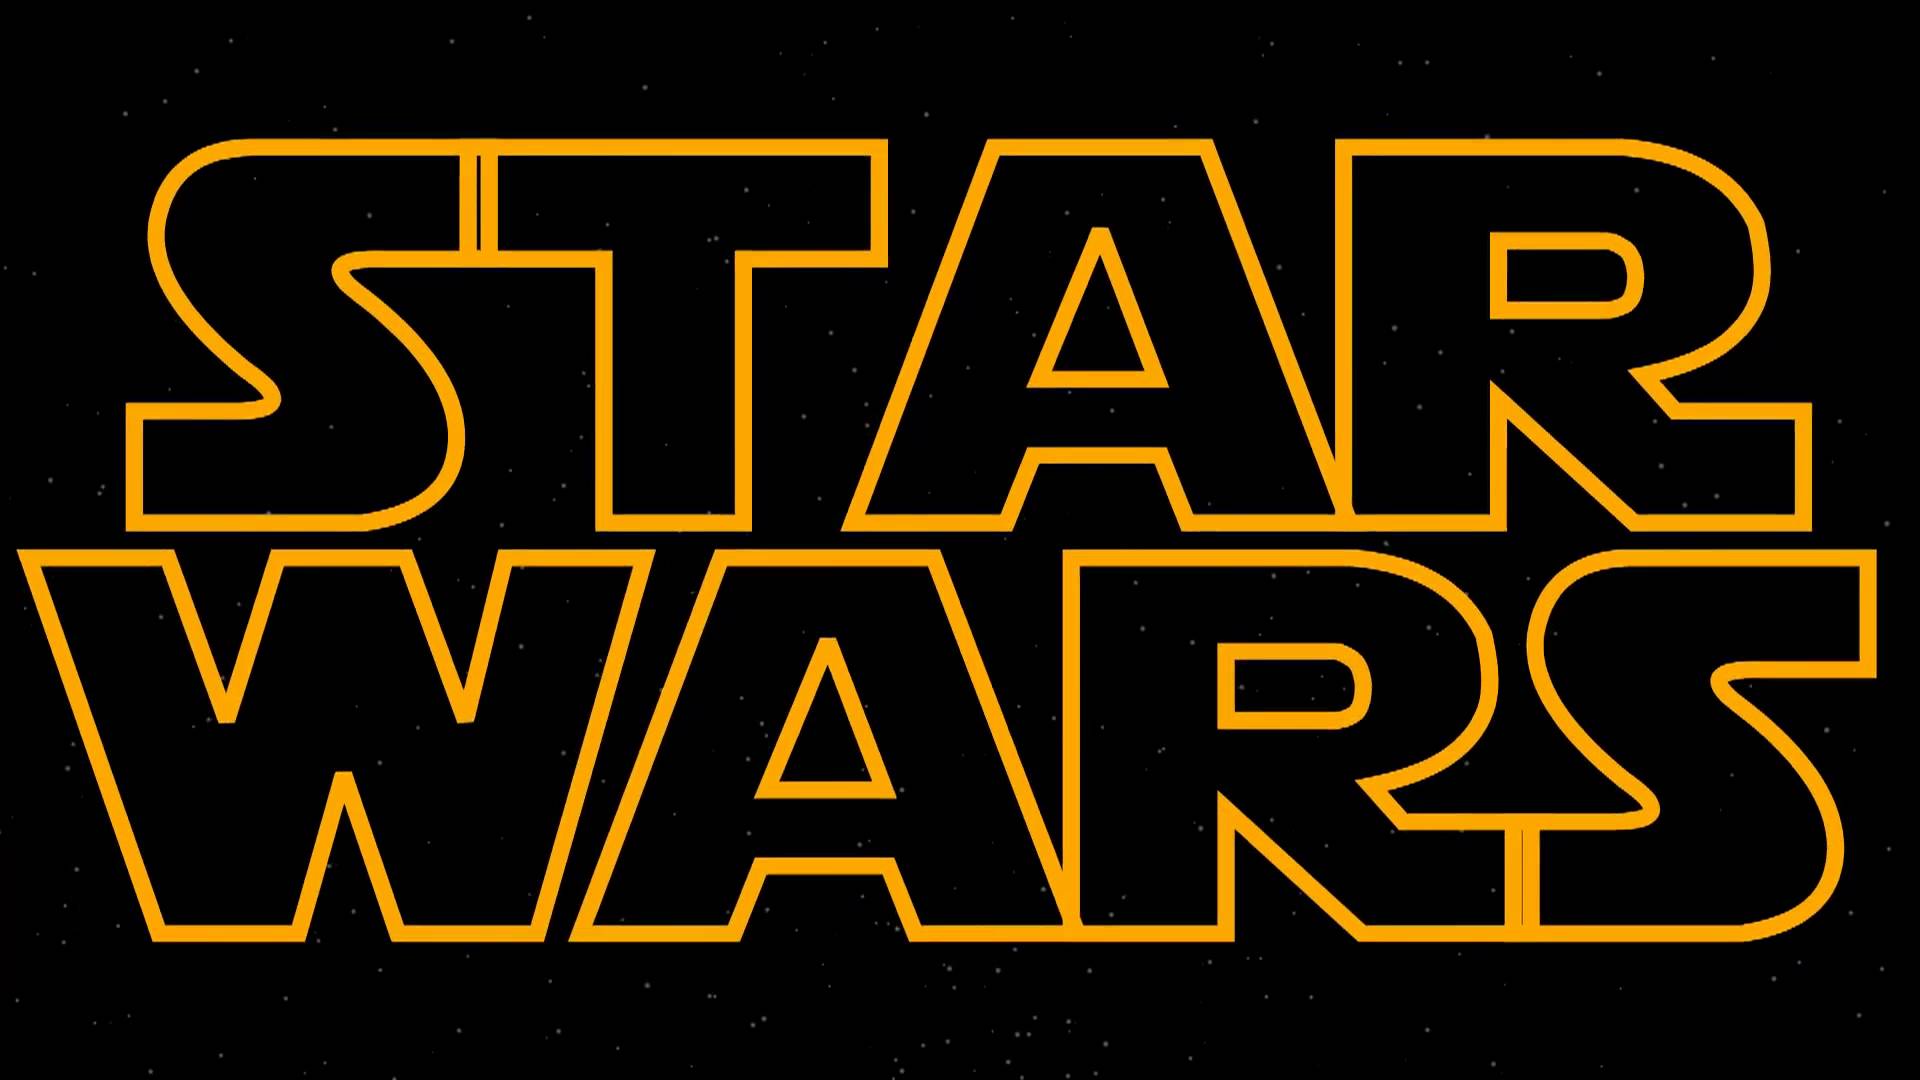 Star Wars serisinin sekizinci filmi 26 Mayıs 2017'de vizyona girecek